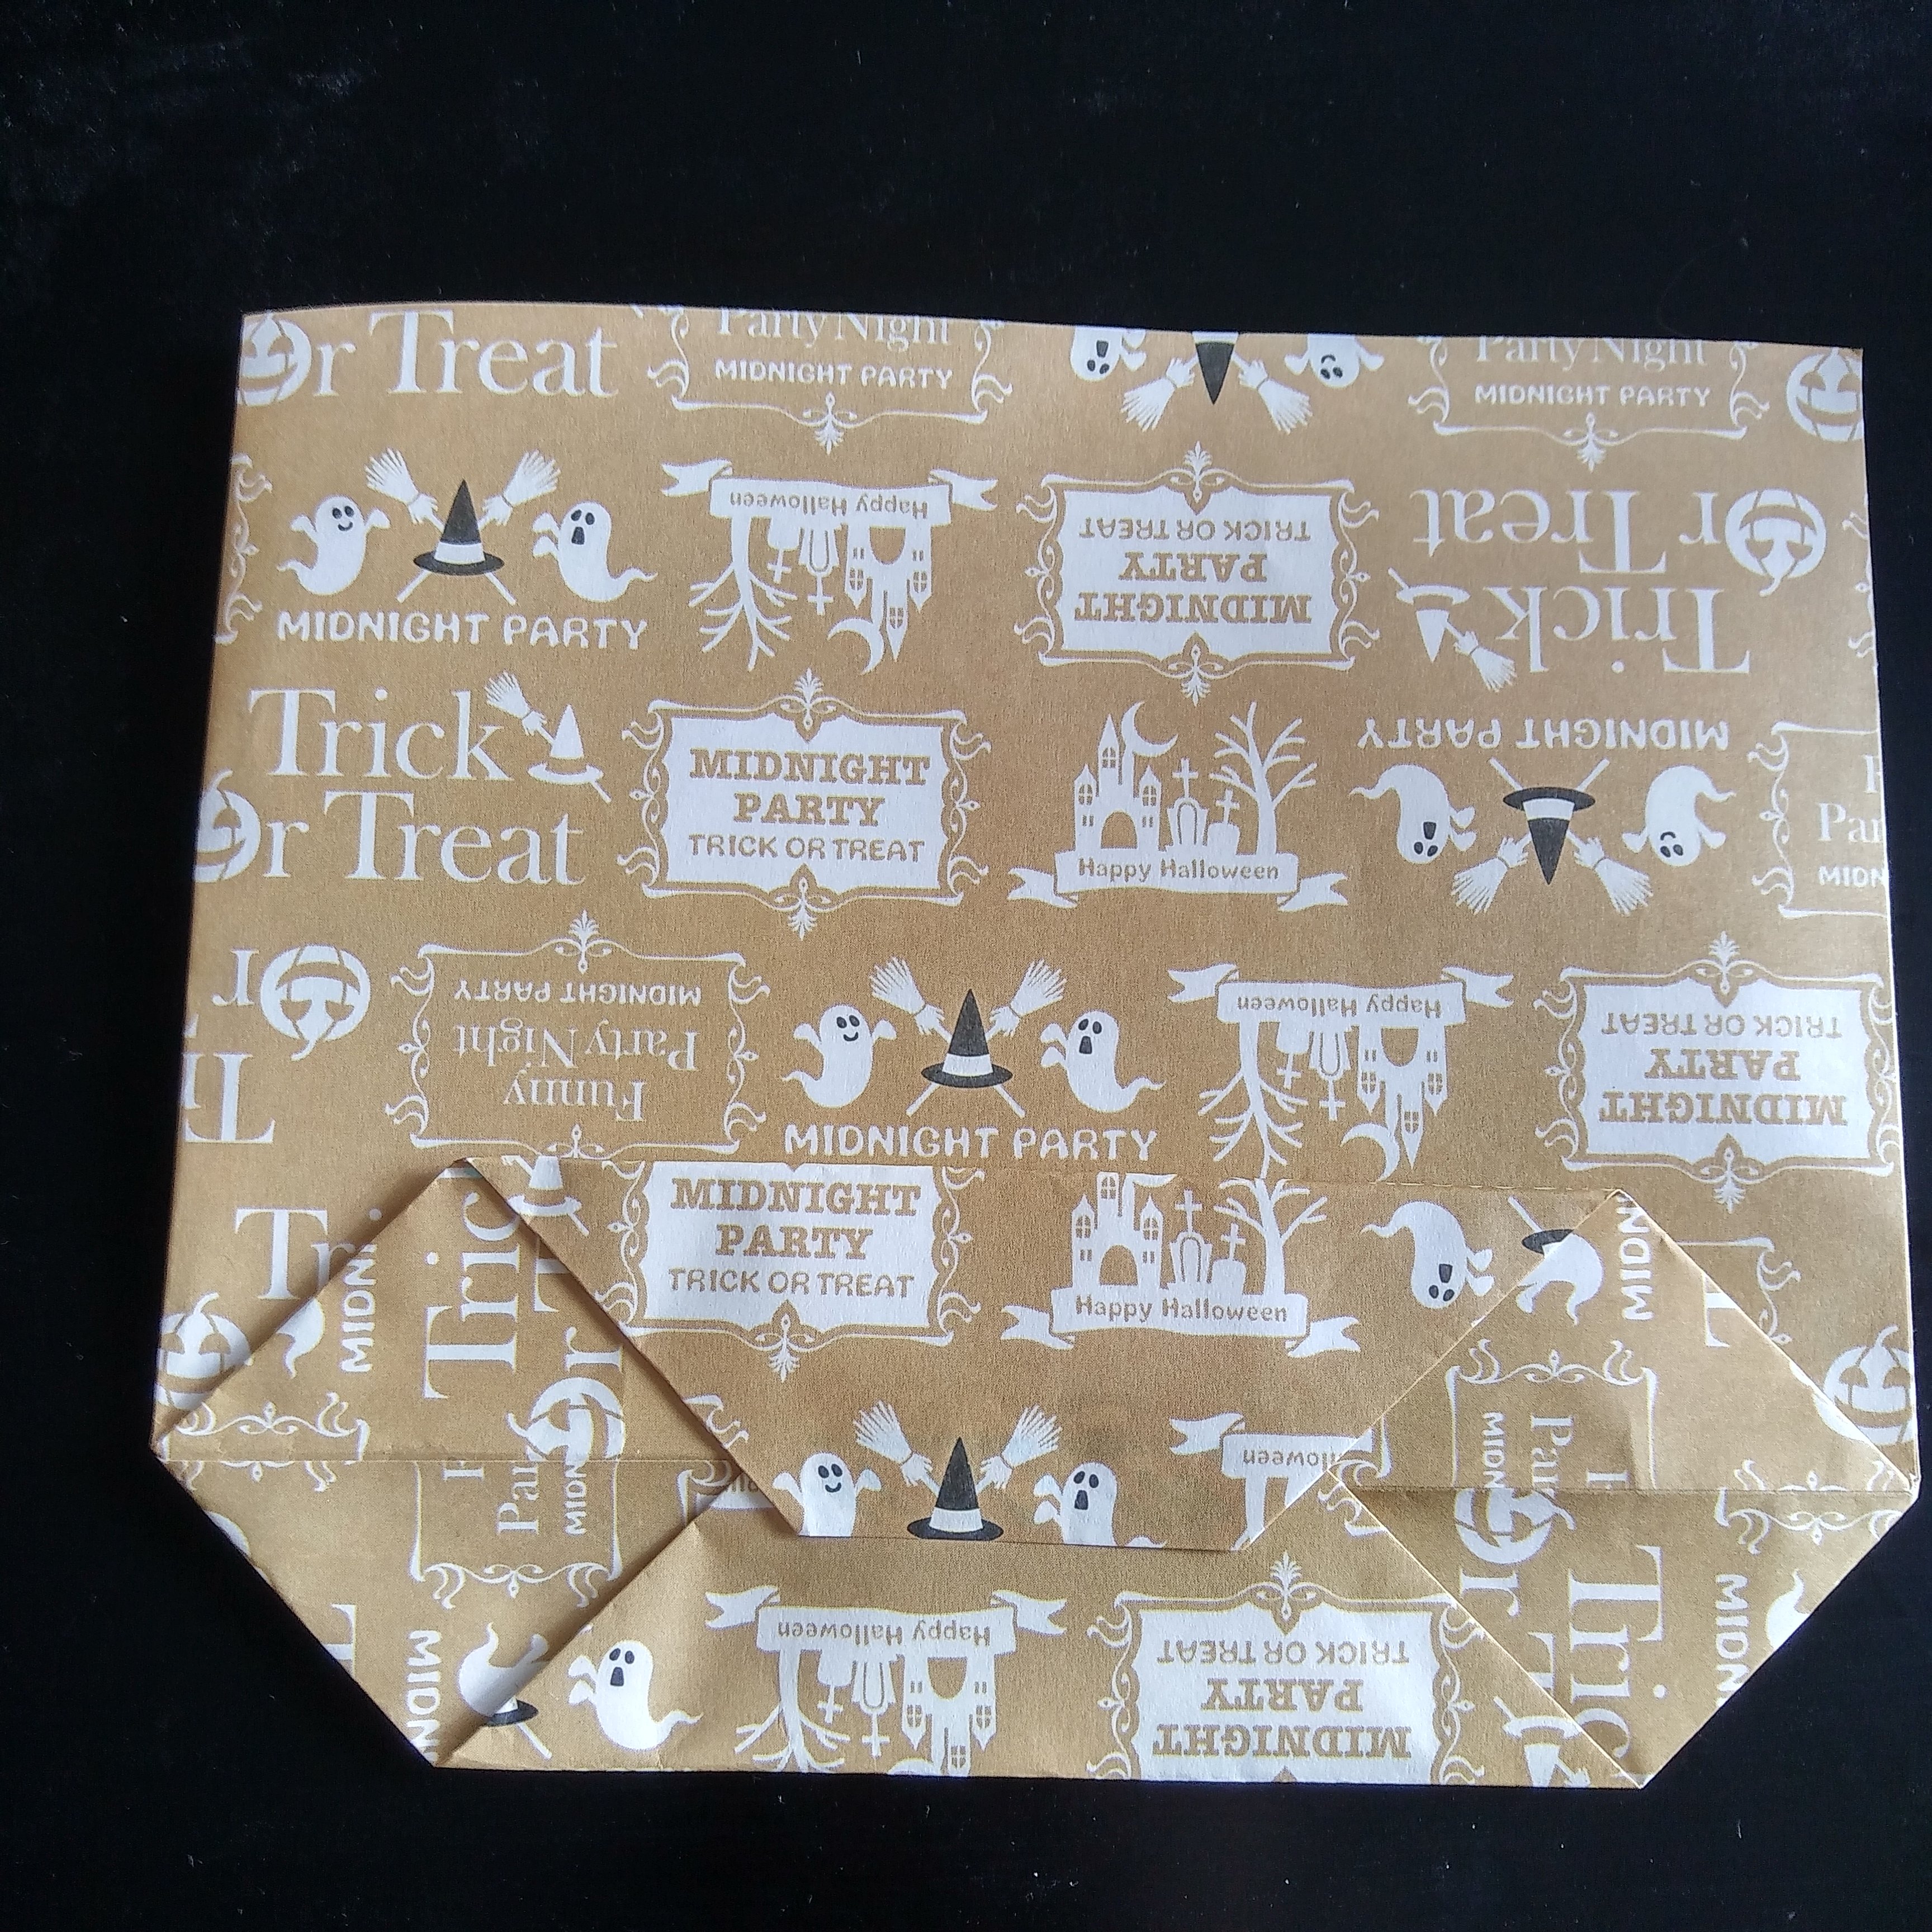 100均折り紙でミニサイズの紙袋を作ろう オリジナル紙袋の作り方 あんふぁんweb